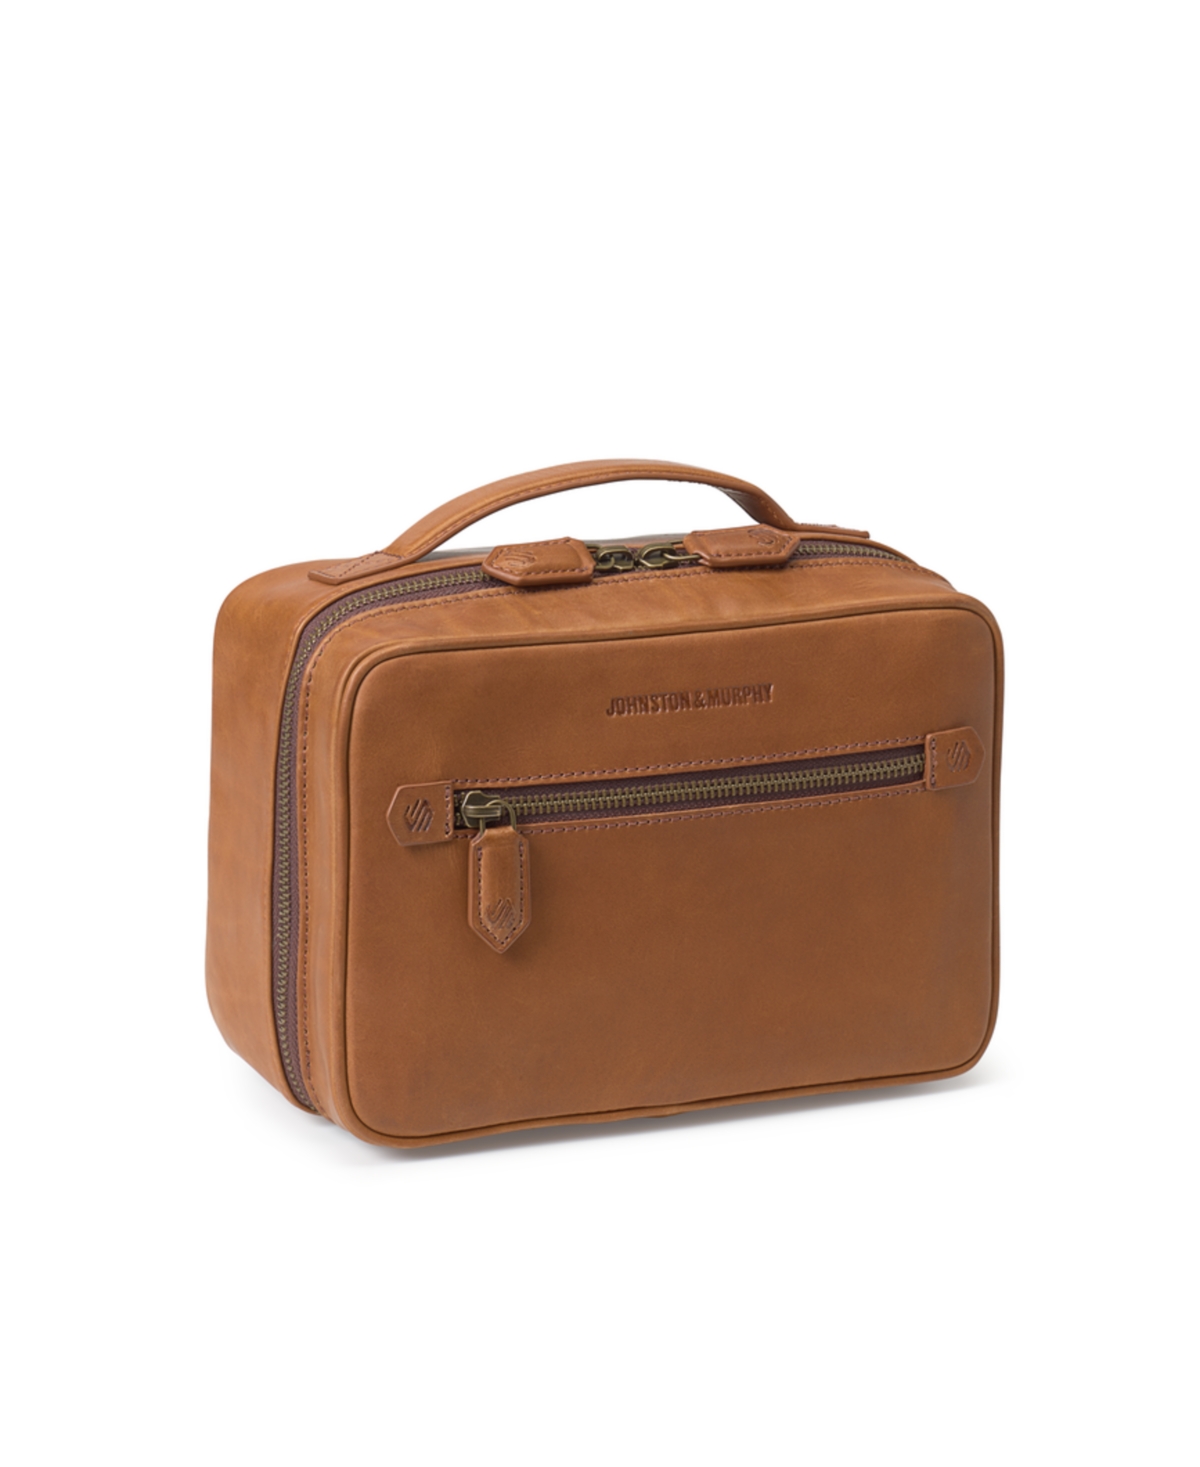 Johnston & Murphy Men's Rhodes Travel Kit In Tan Full Grain Leather